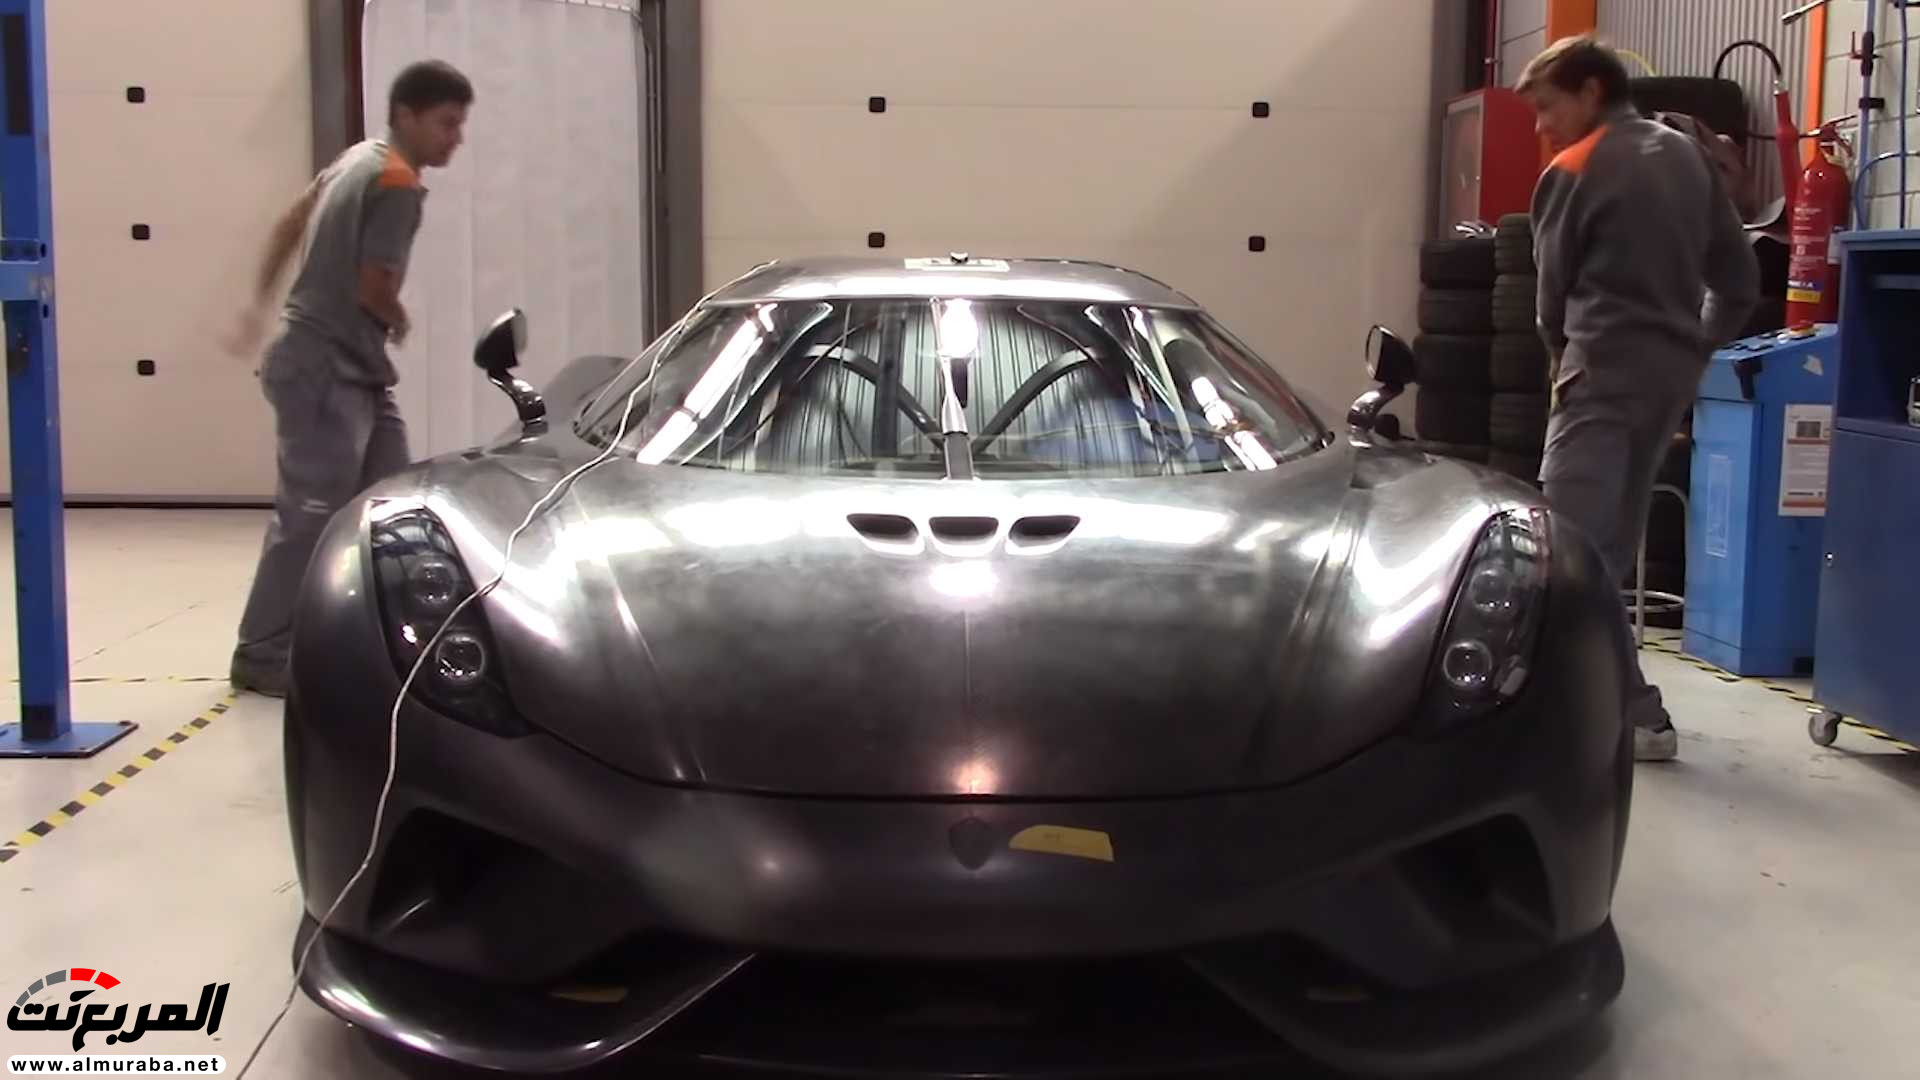 "بالفيديو" اختبار تصادم سيارة كوينيجسيج بقيمة 7.5 مليون ريال! 26